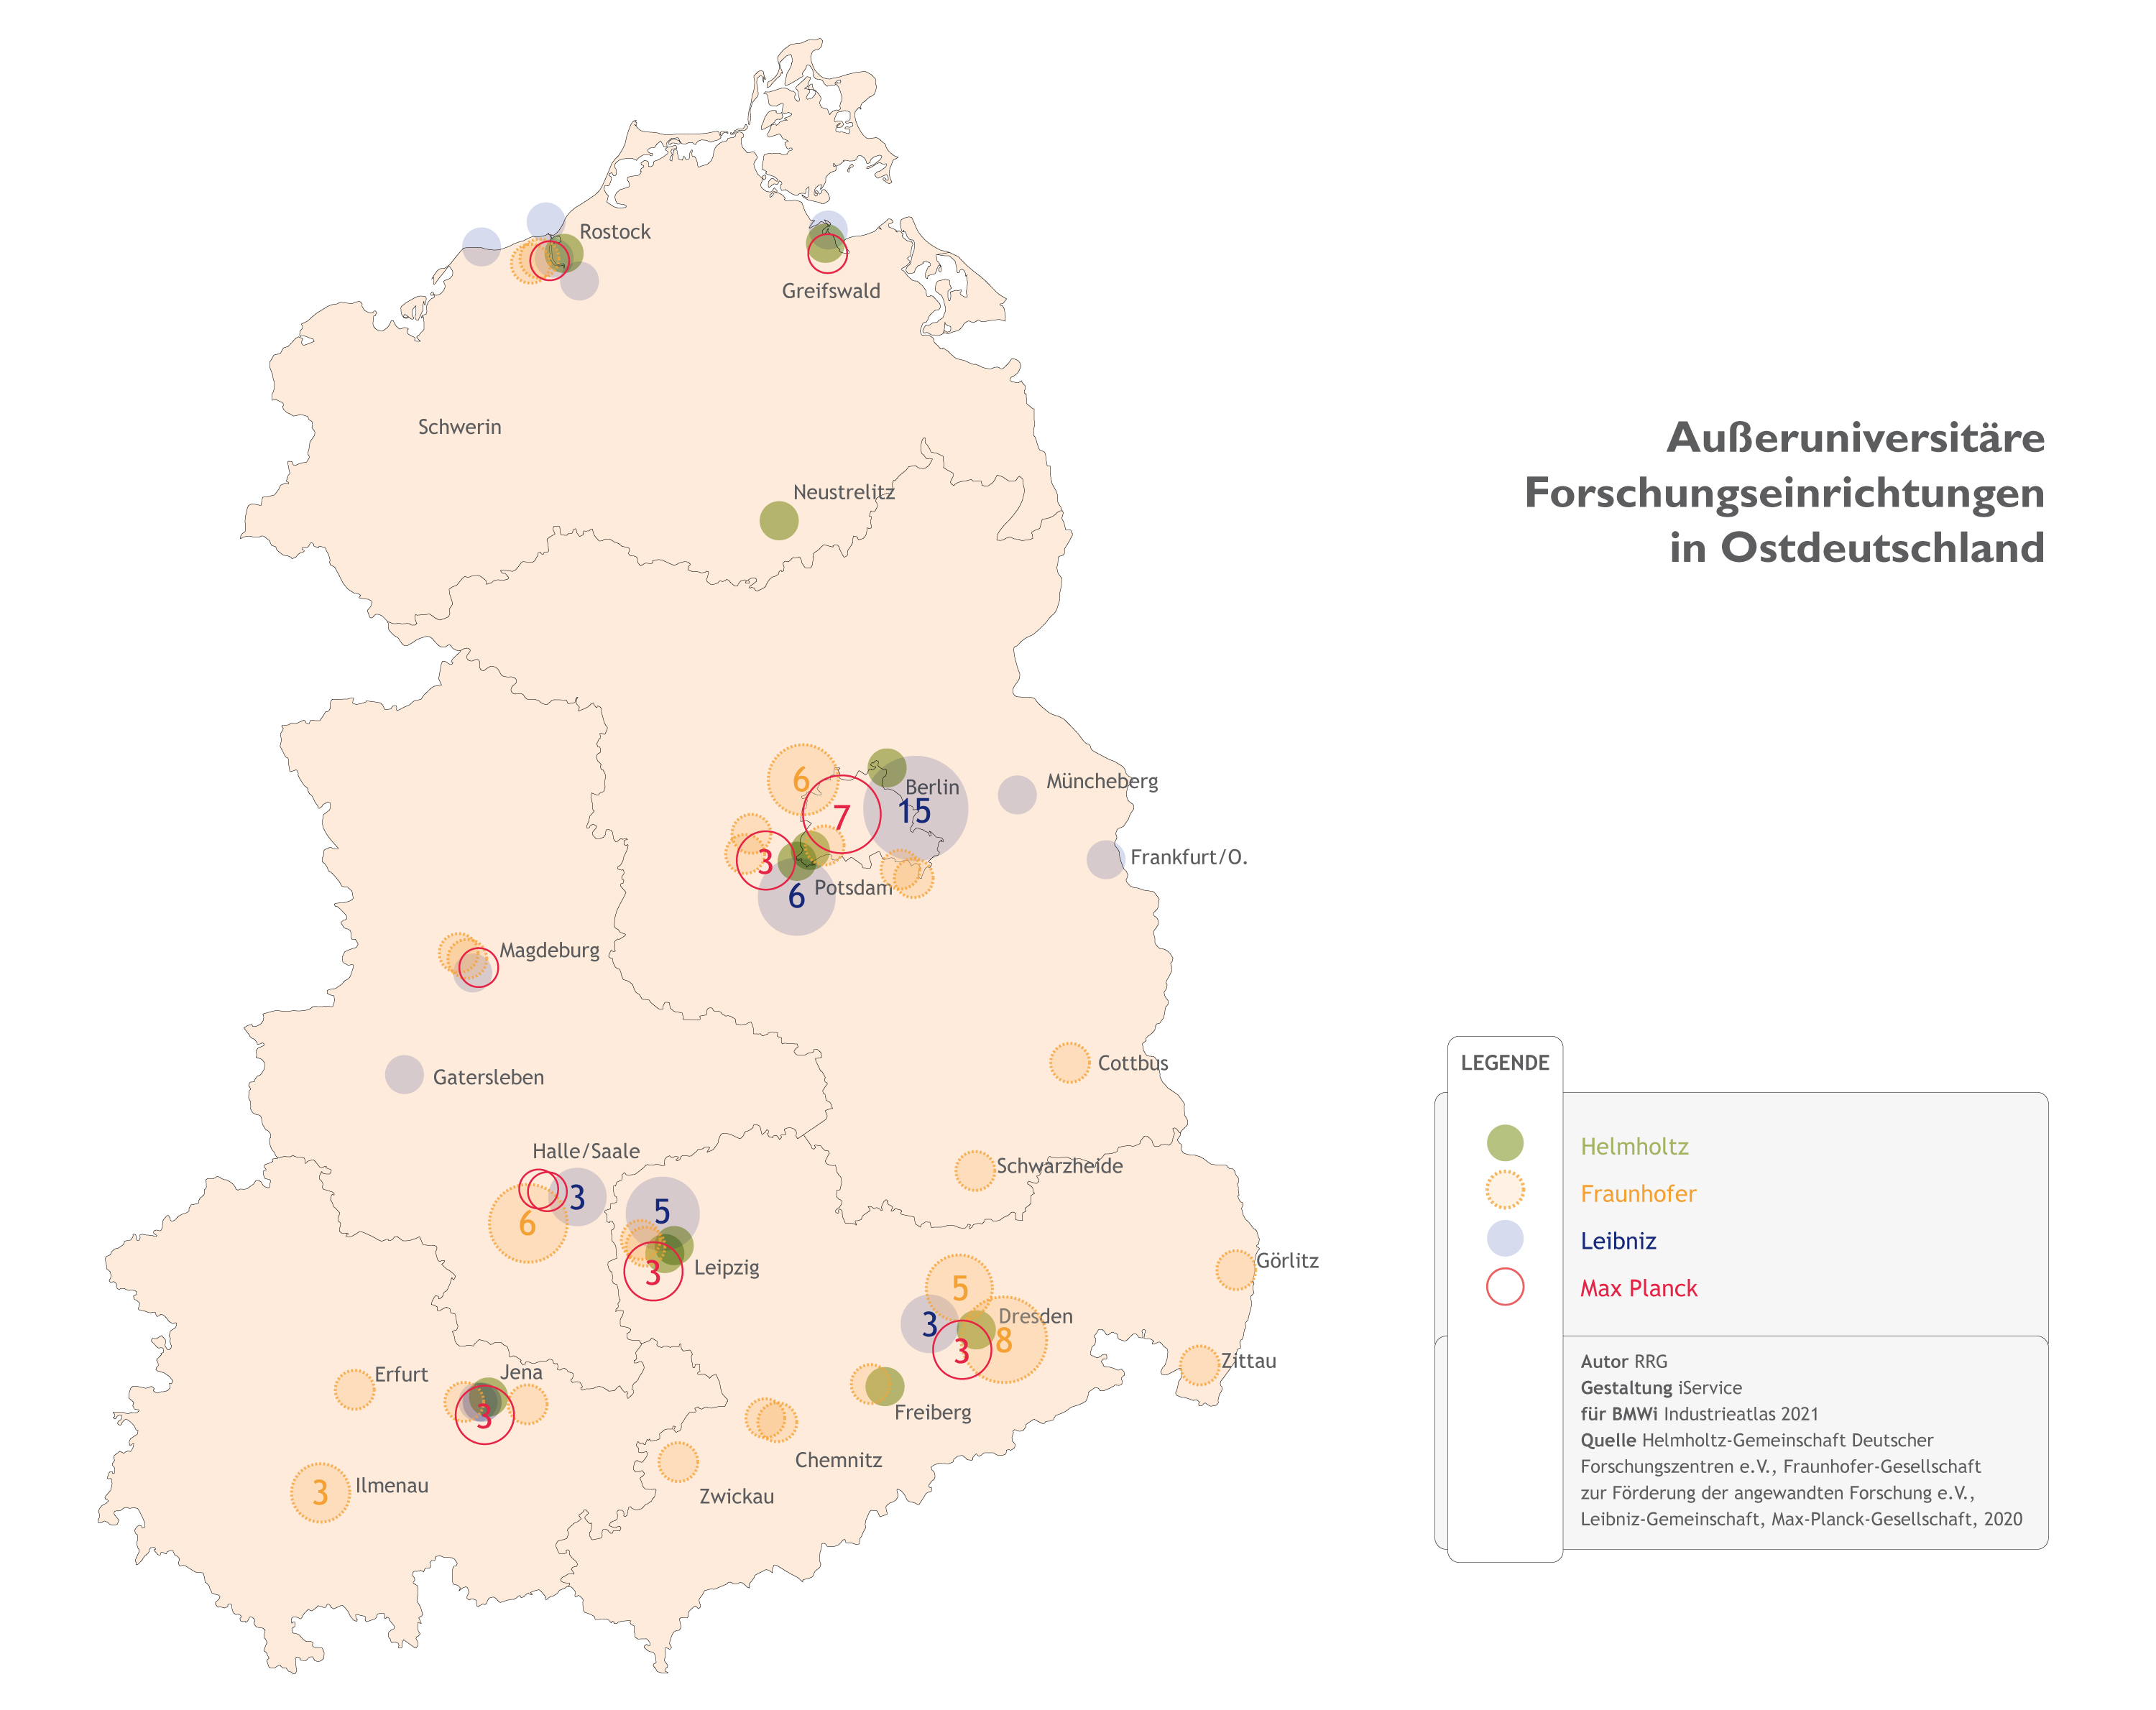 Außeruniversitäre Forschungseinrichtungen in Ostdeutschland